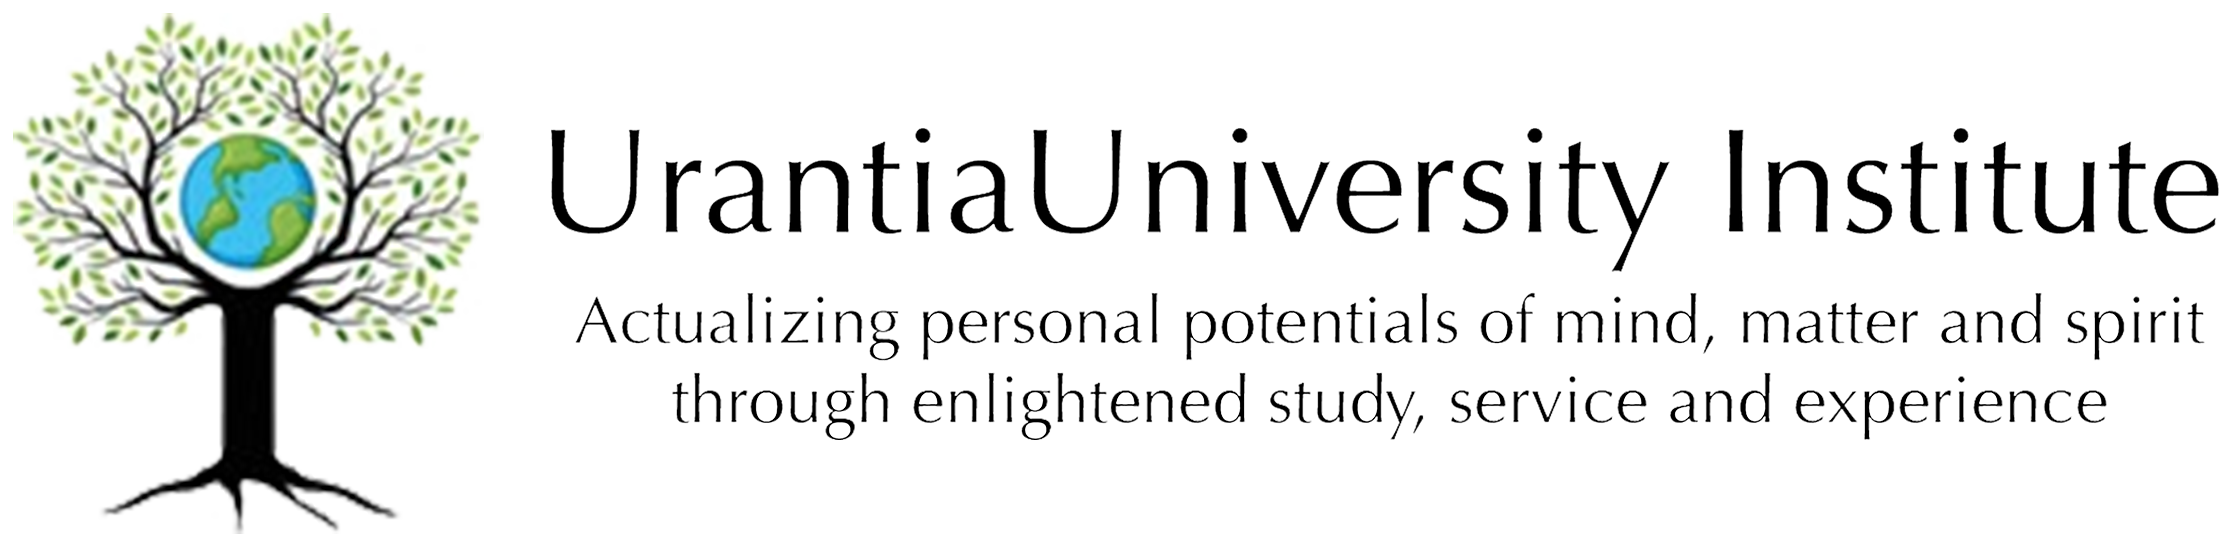 Urantia University Logo + Text 